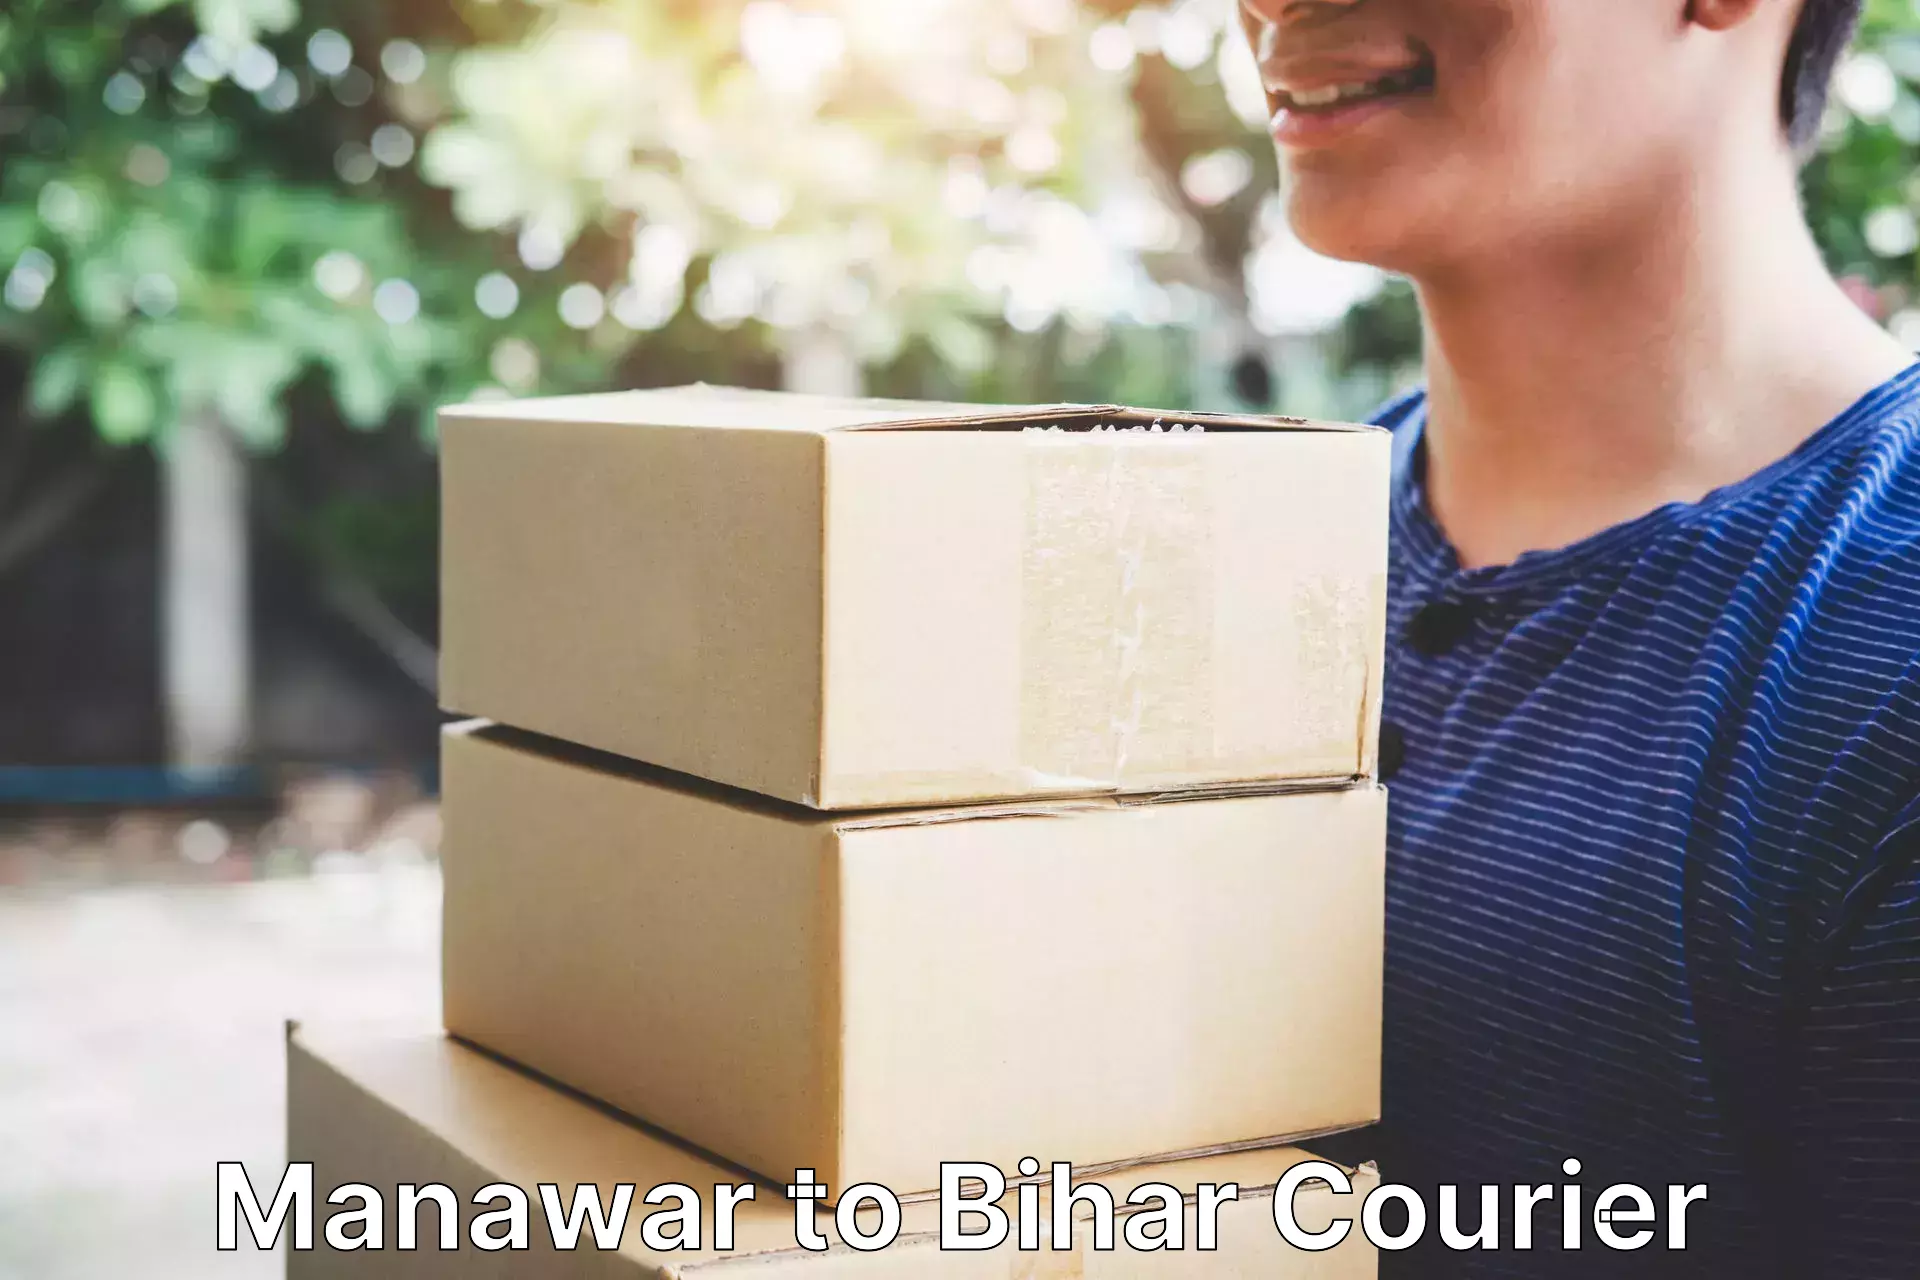 Express logistics service Manawar to Bihar